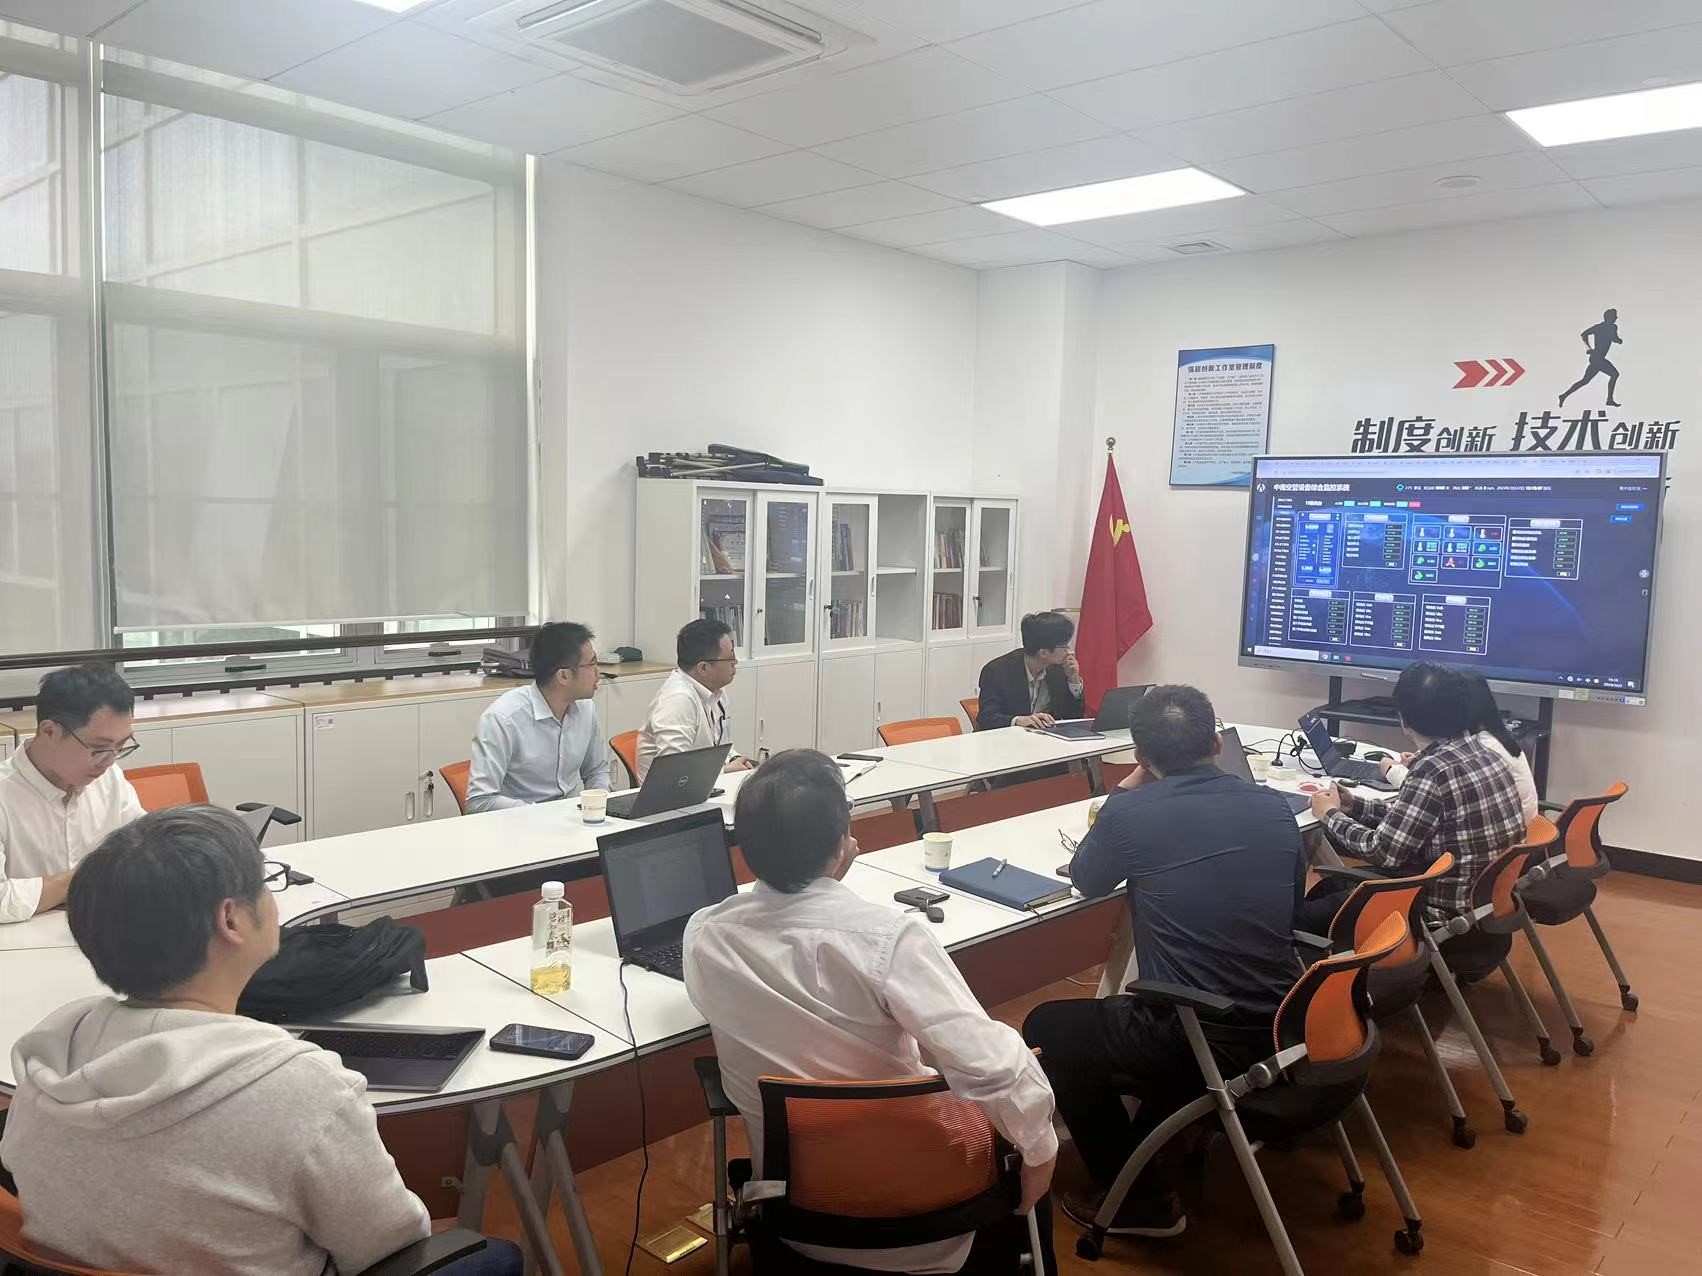 中南空管局技术保障中心设备综合监控系统阶段工作推进会顺利召开